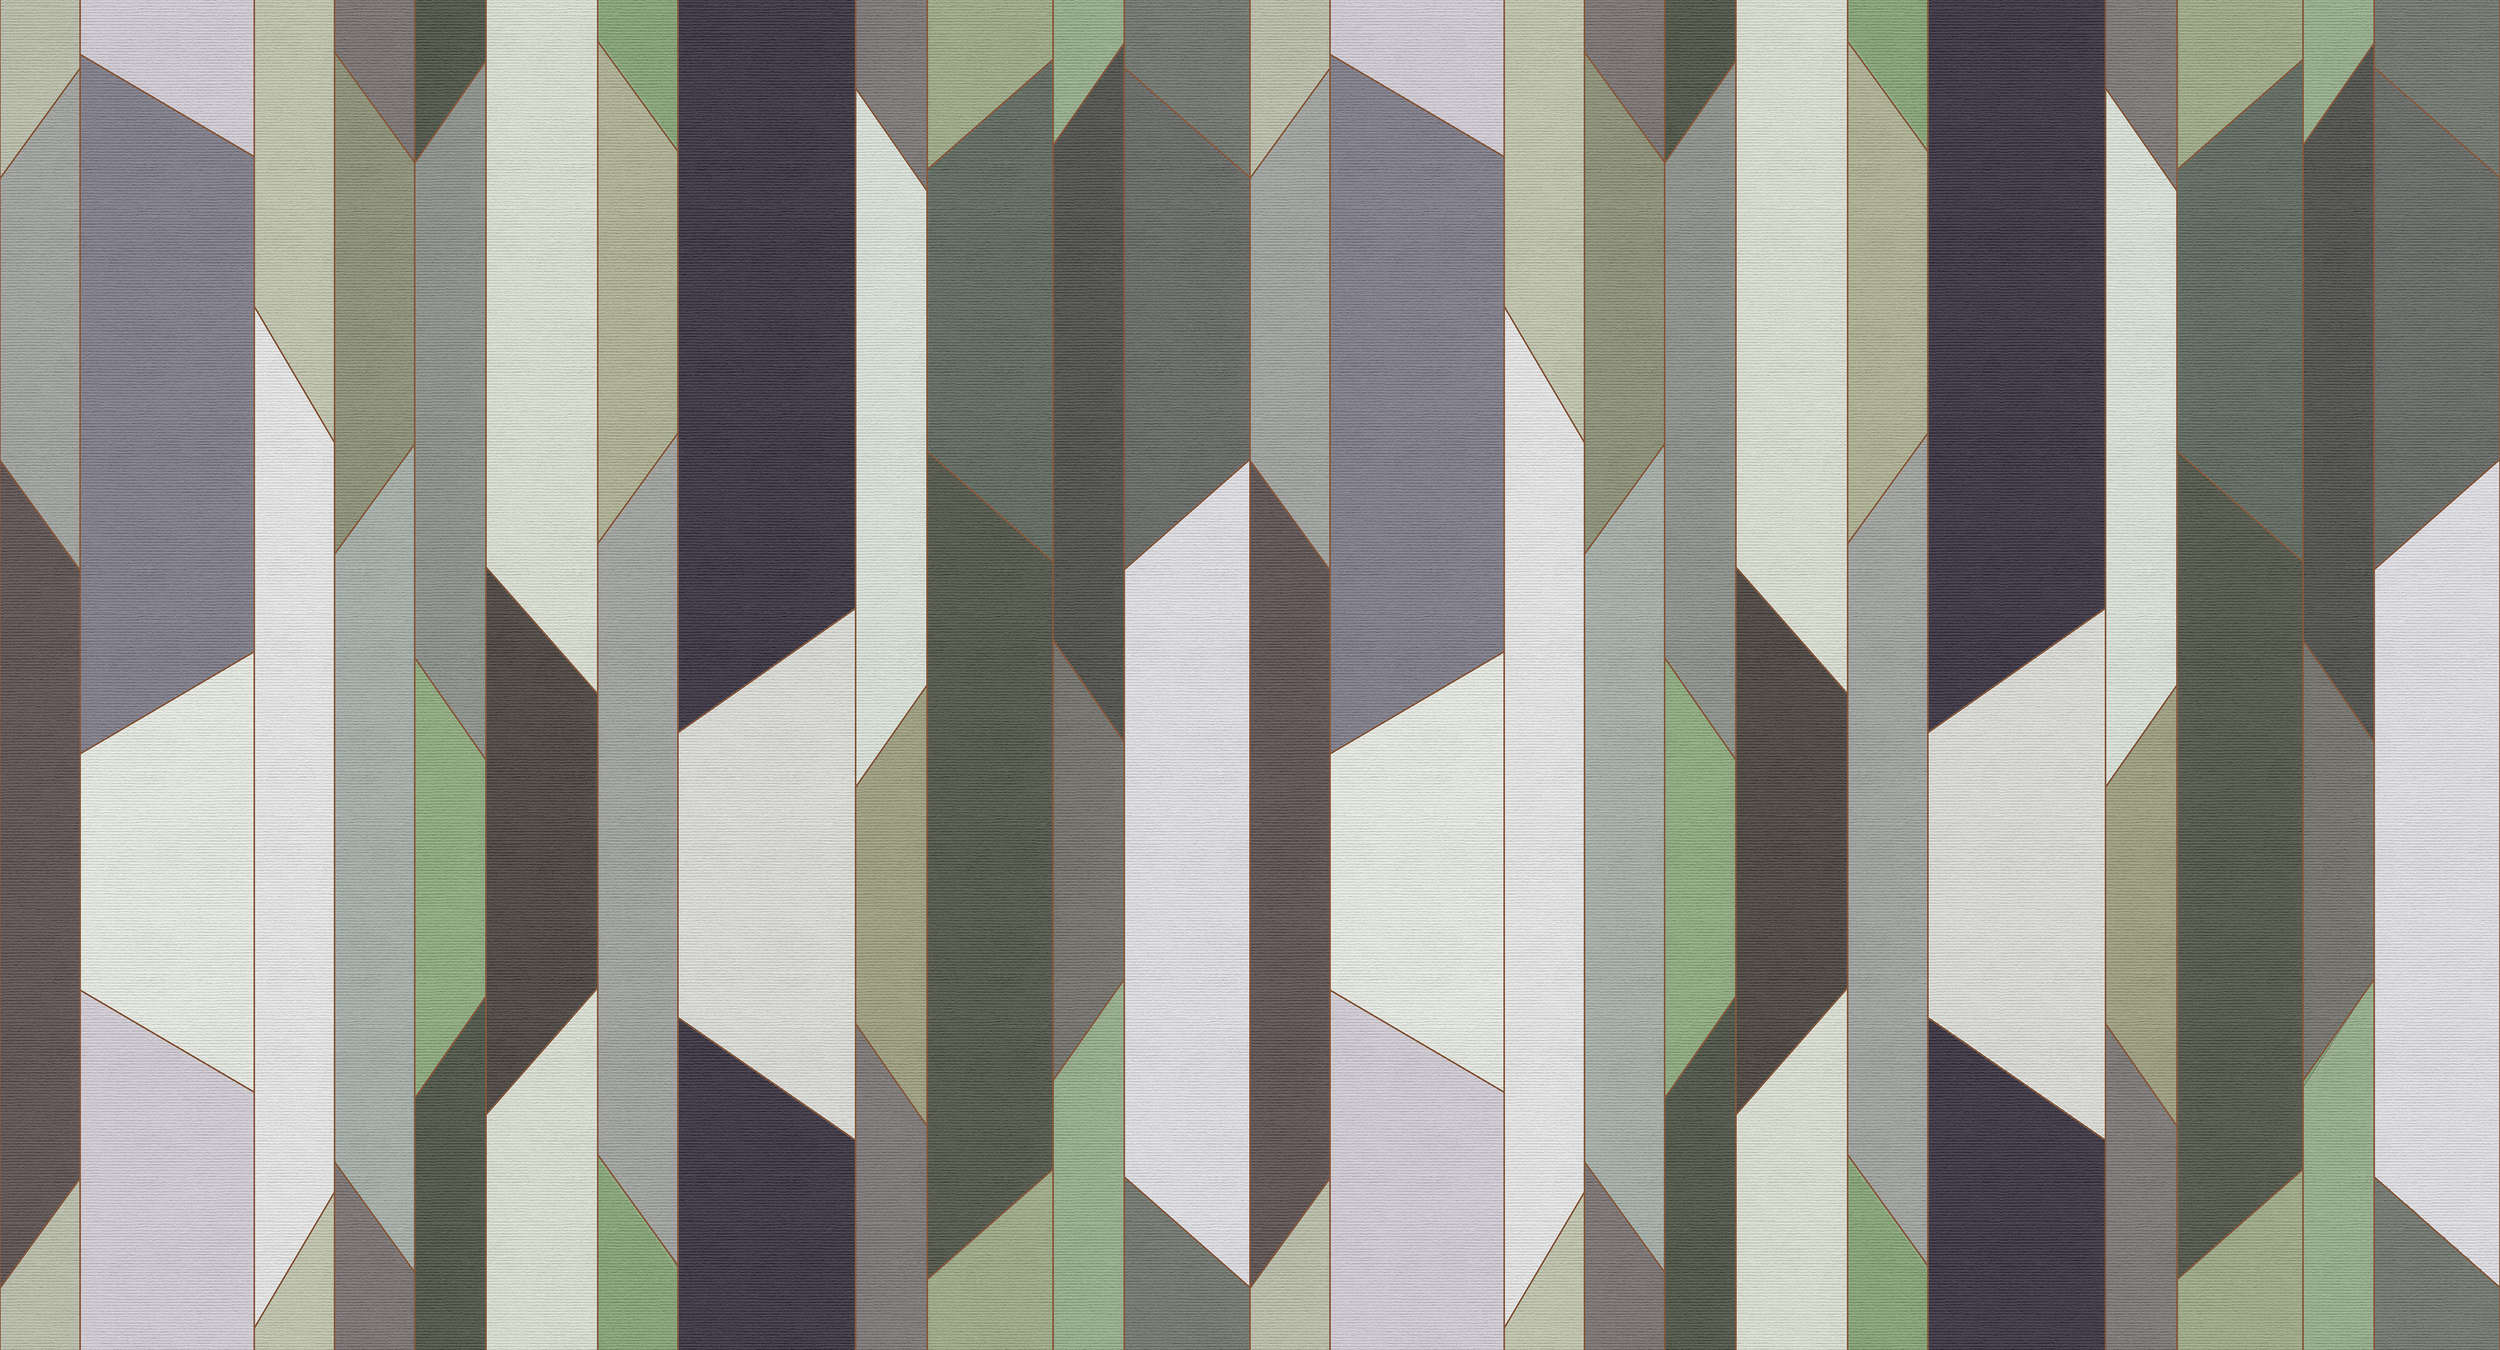             Fold 1 - Retro style stripe wallpaper in ribbed texture - Beige, Cream | Premium Smooth Non-woven
        